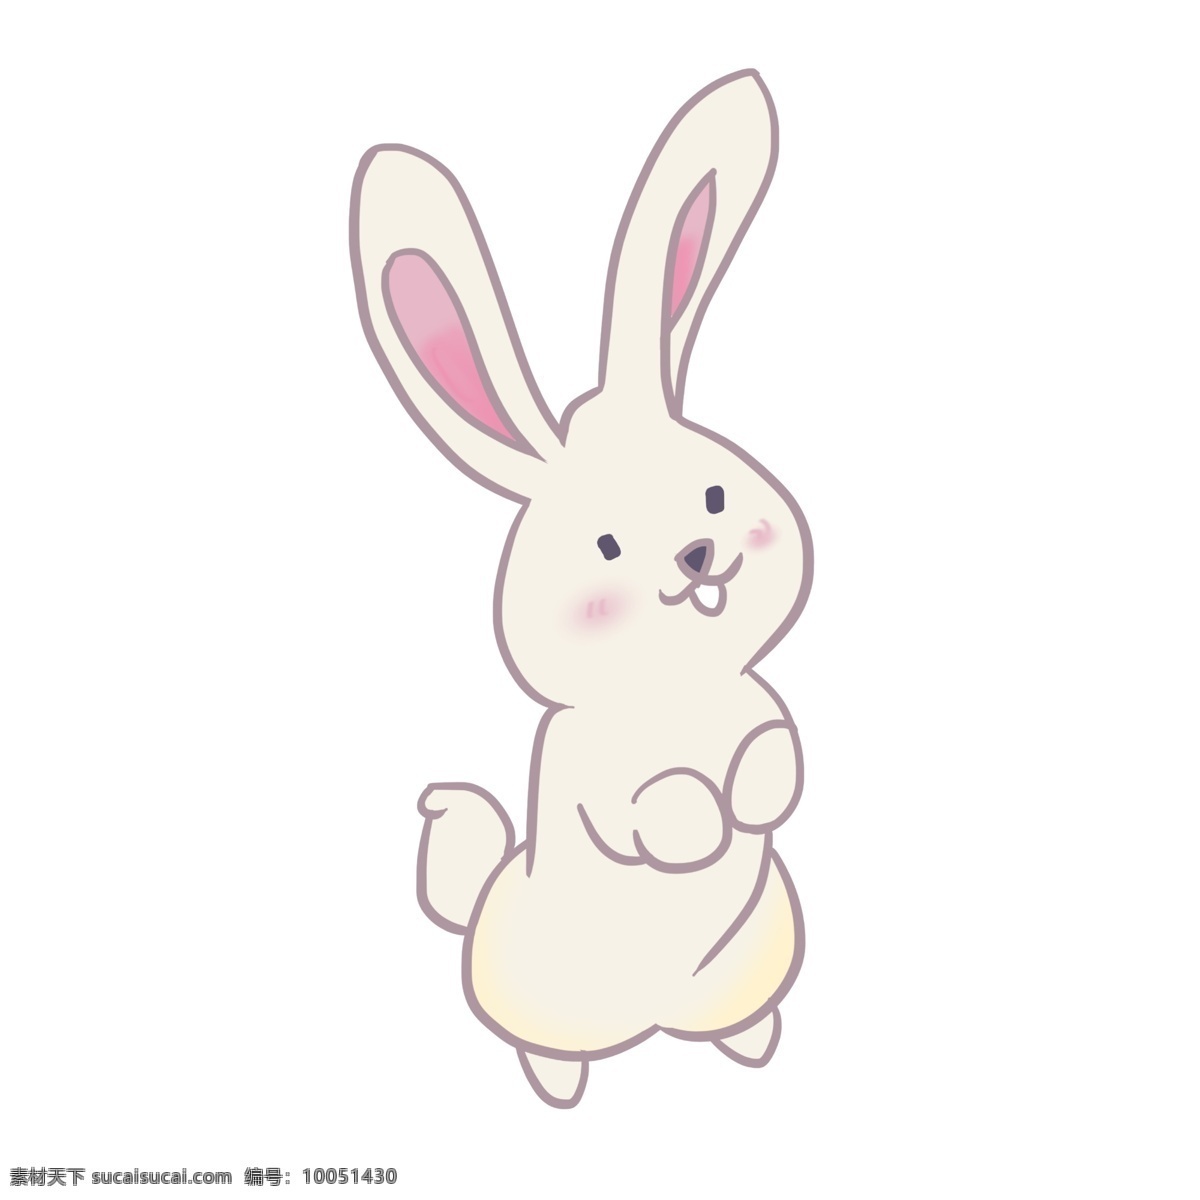 手绘 白色 兔子 插画 白色的兔子 可爱的兔子 卡通插画 手绘兔子插画 拟人的兔子 长长的耳朵